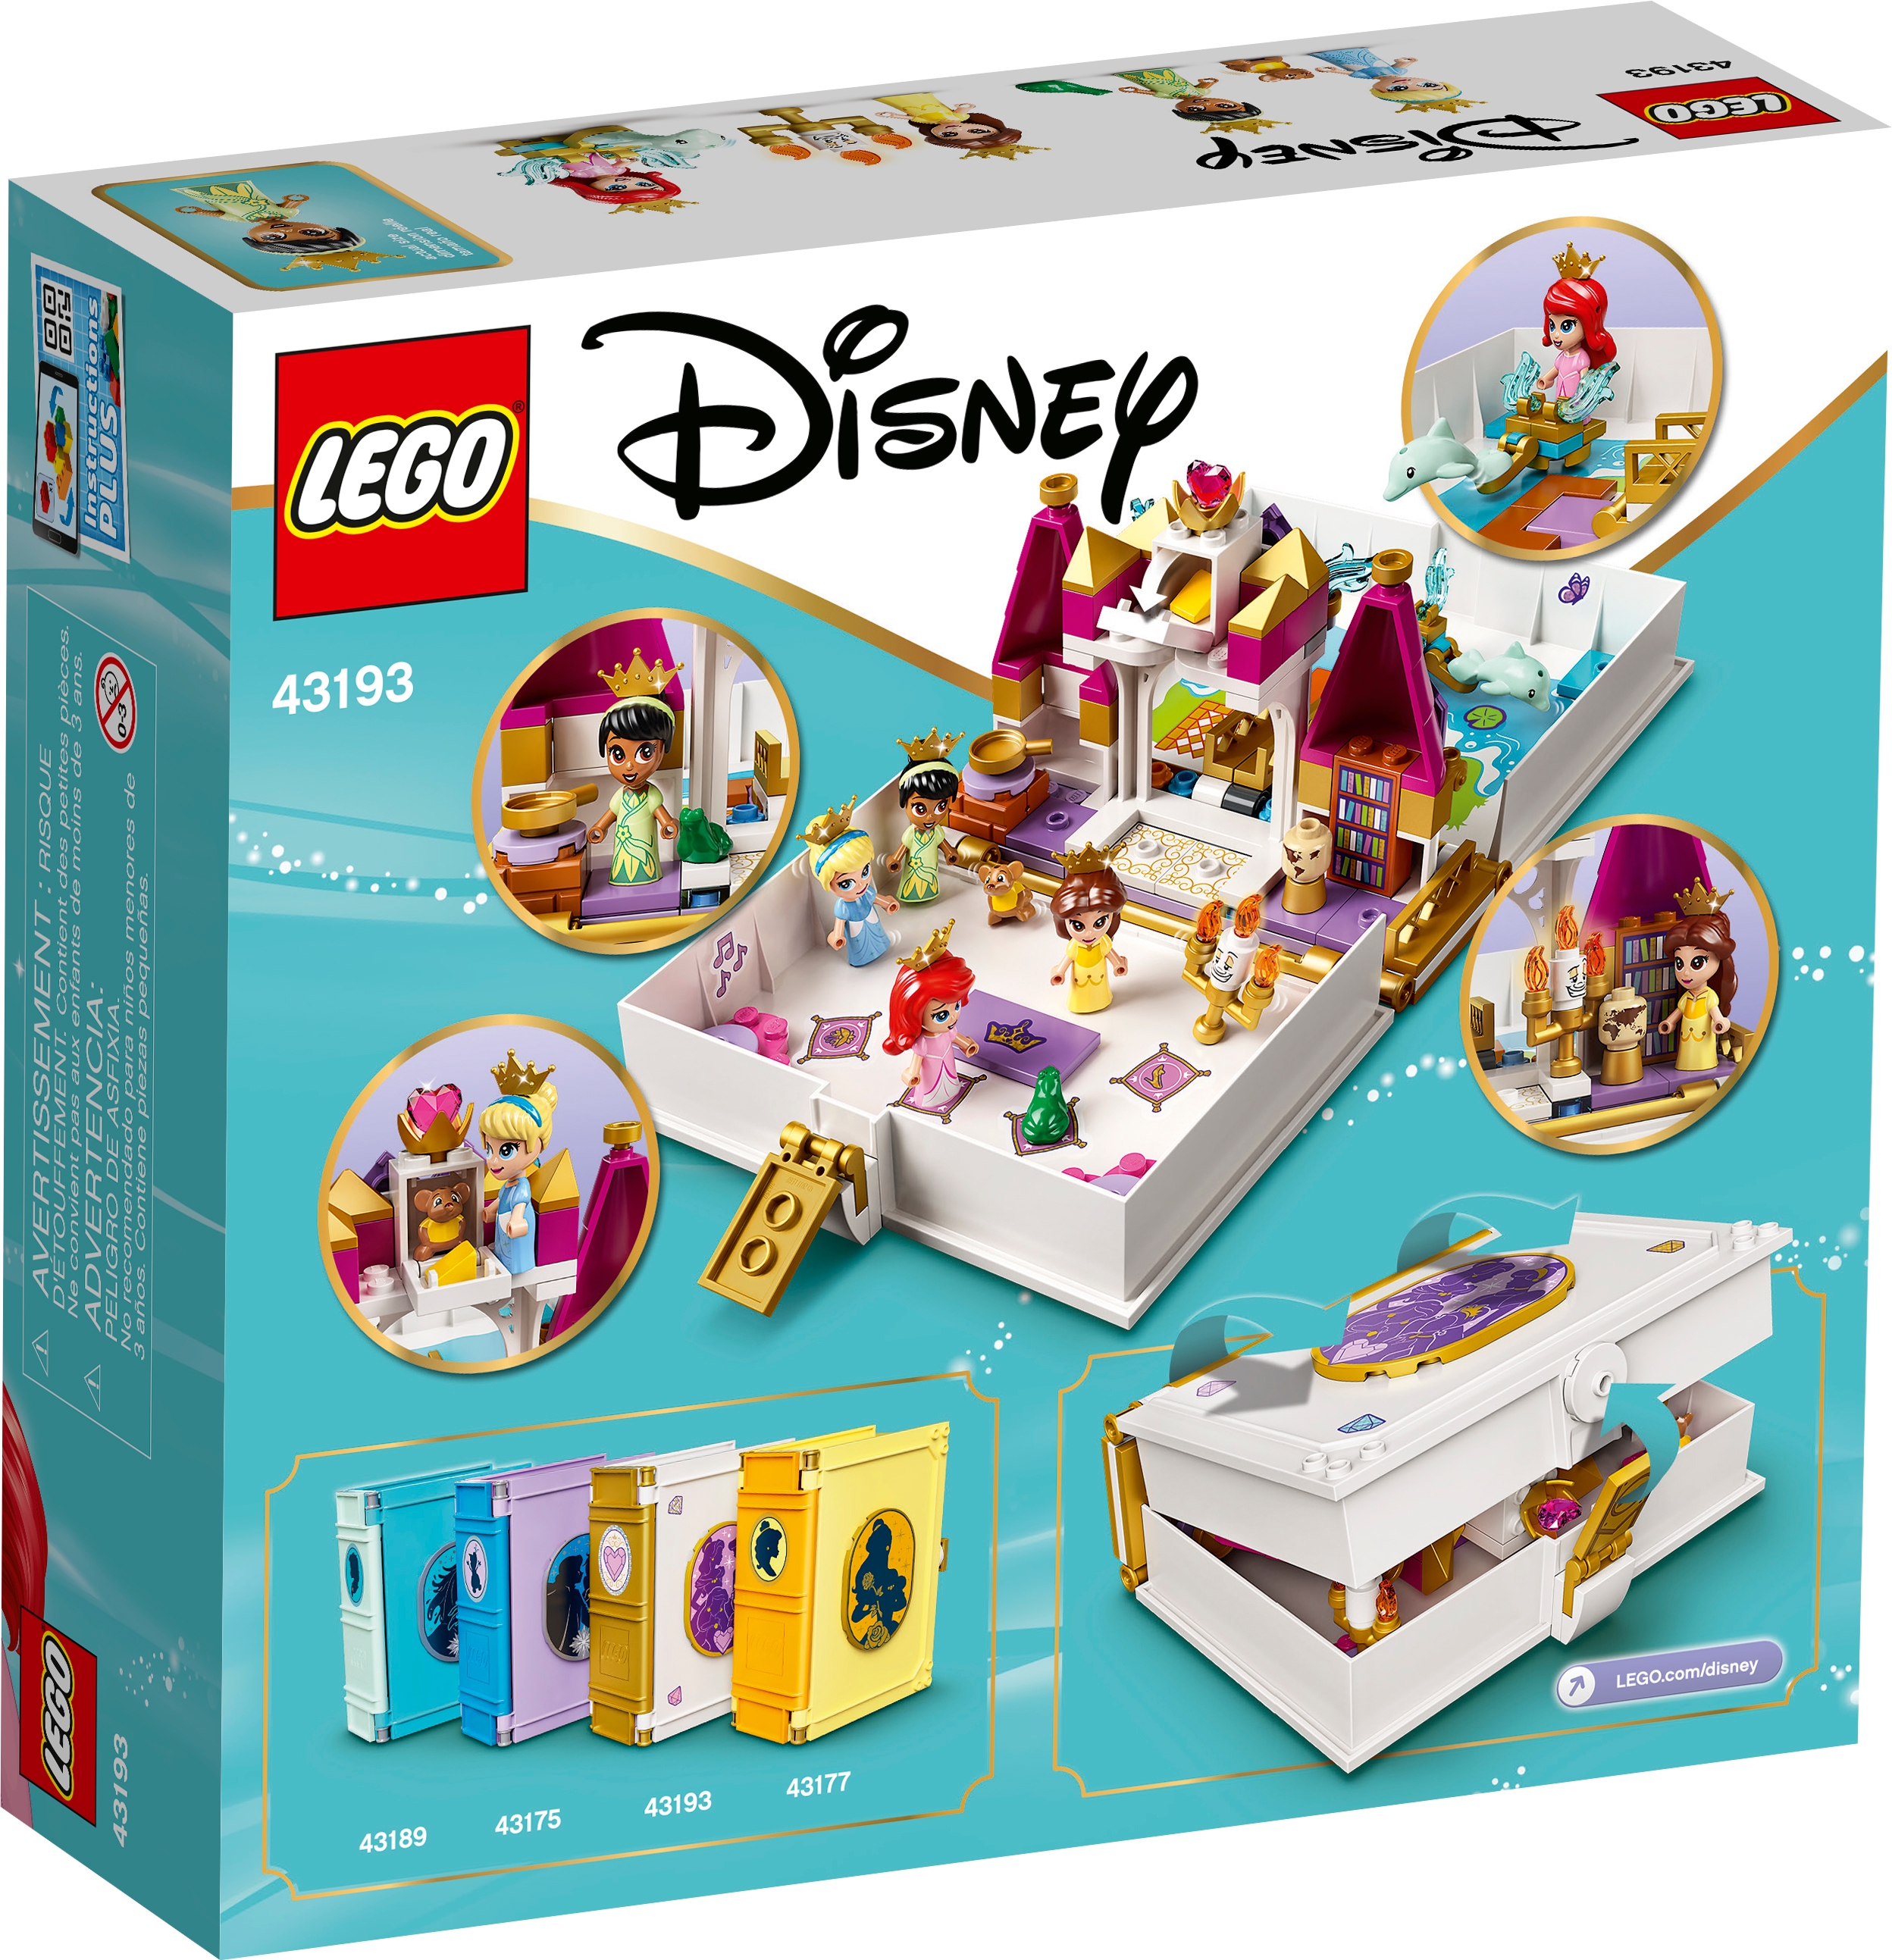 Bella Cenicienta y Tiana/'s Cuentos Adviento 43193 Lego Disney Princesa Ariel